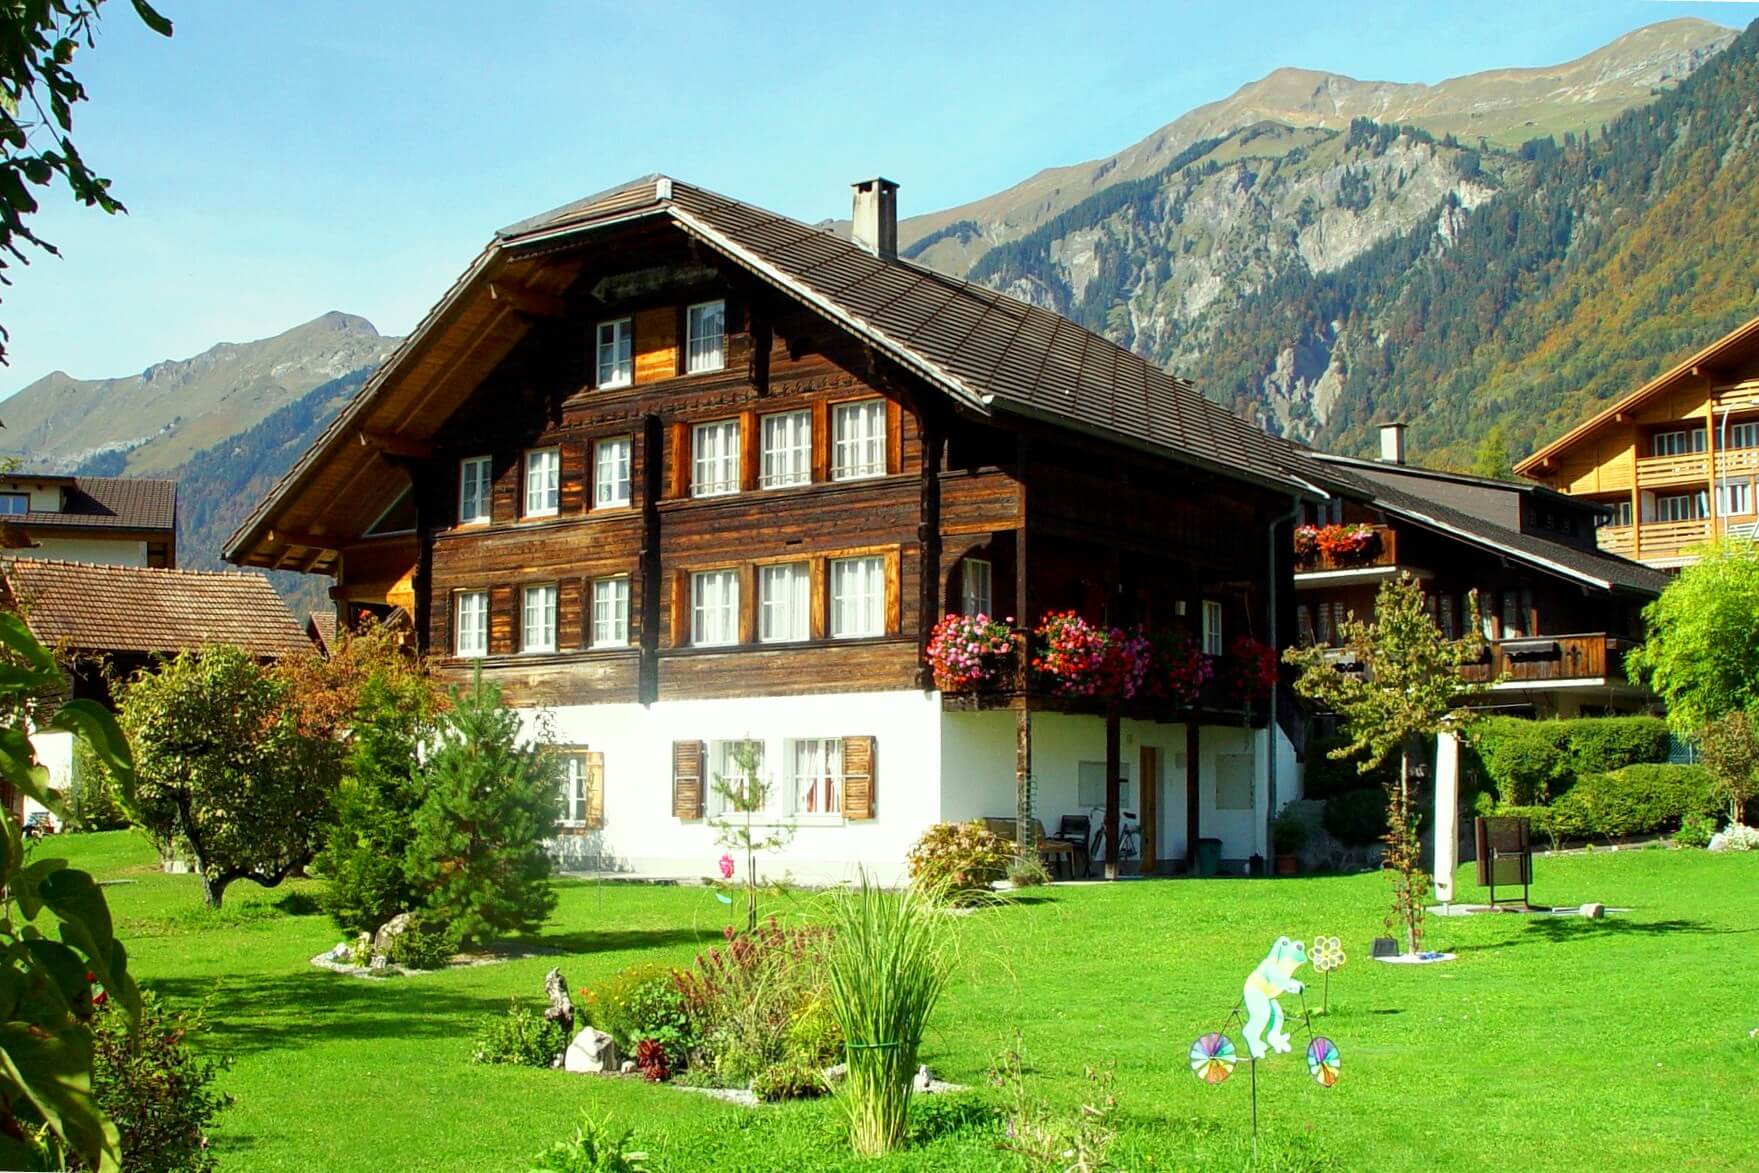 Купить дом в швейцарии дешево сан пауль иль бахар